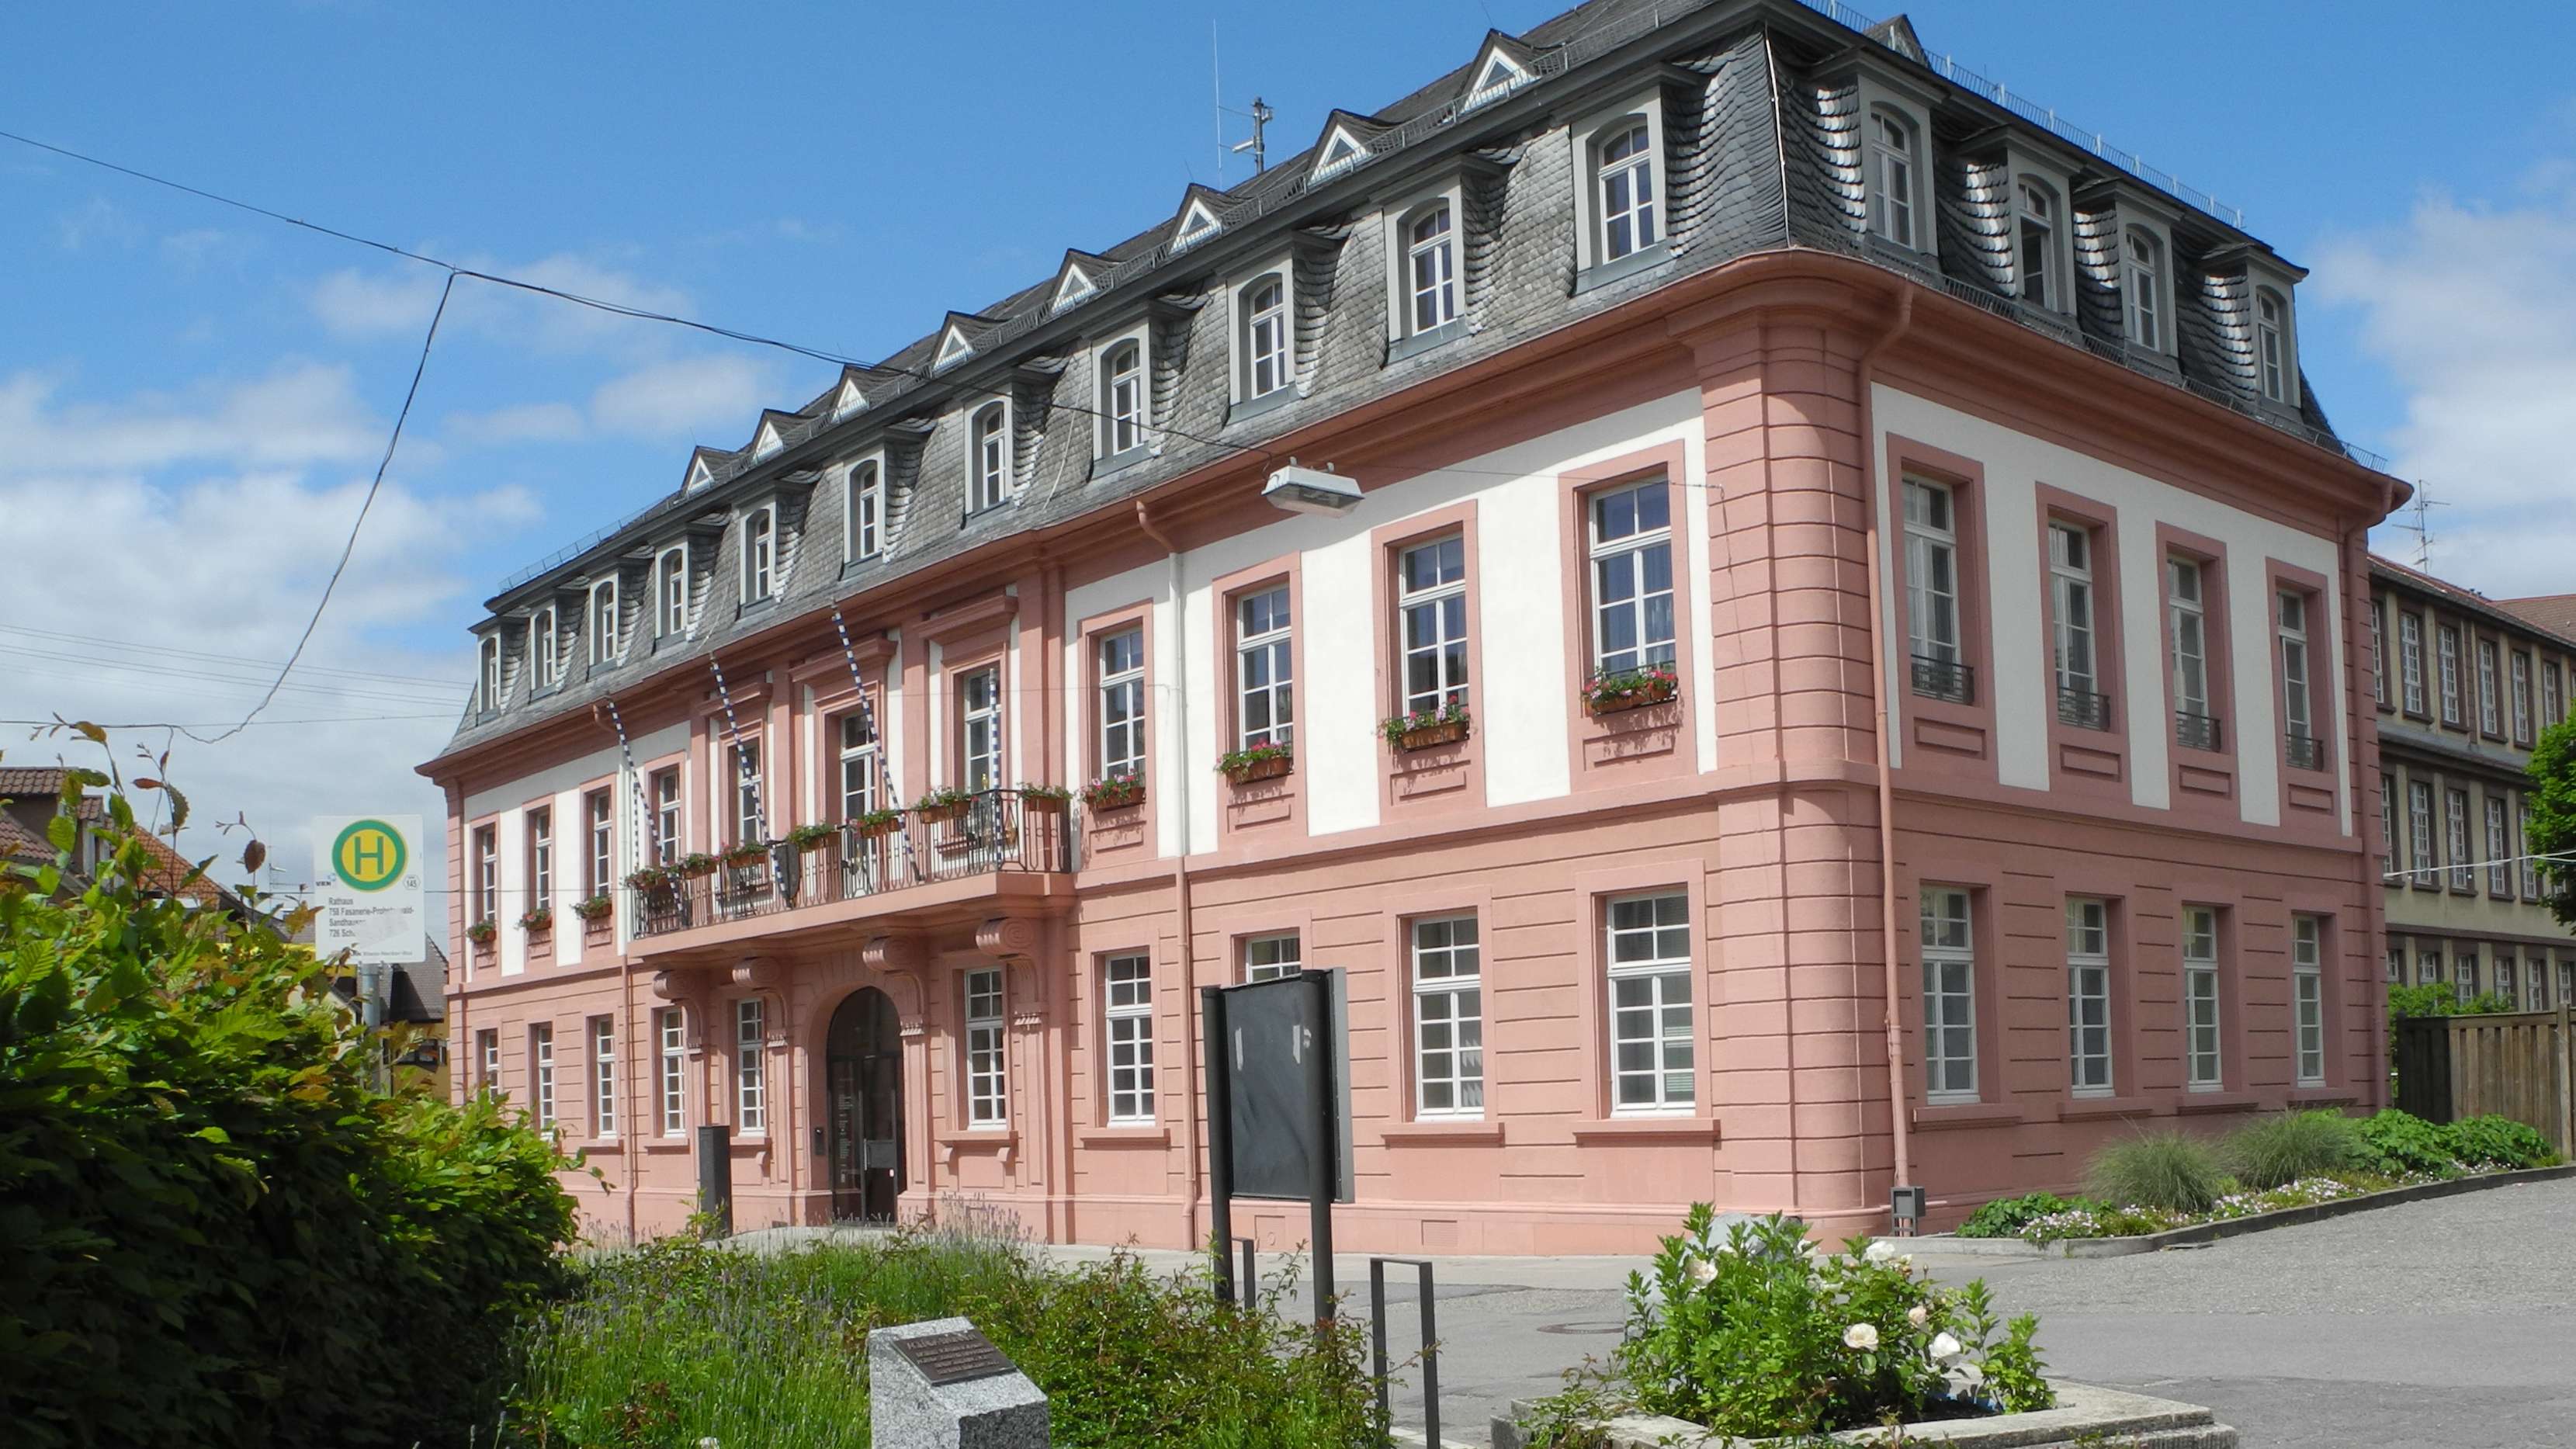  Historische Rathaus 